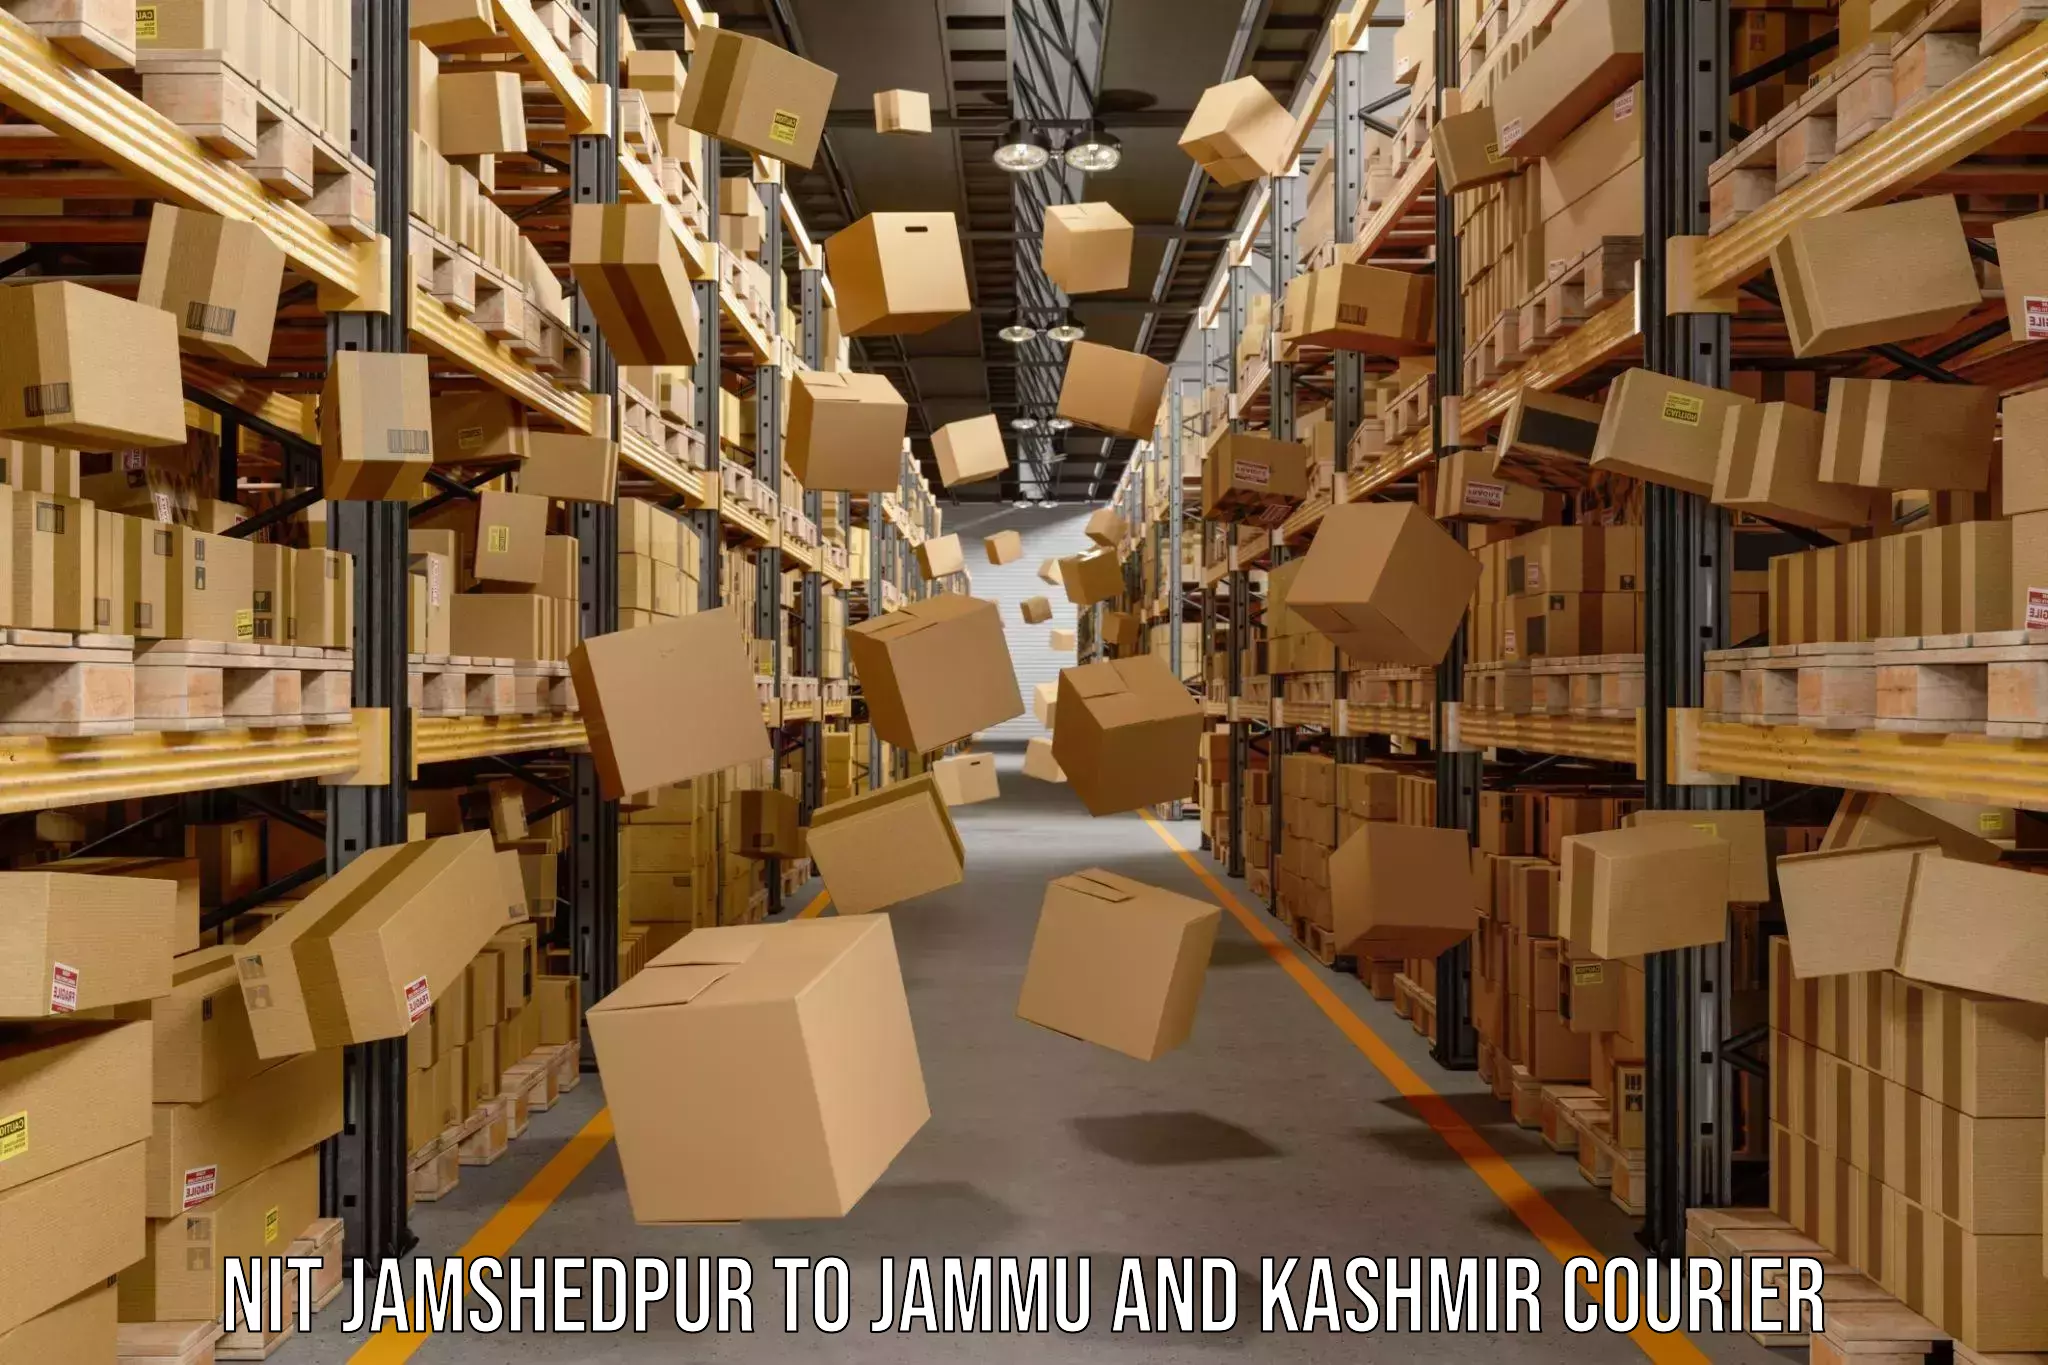 Express delivery network NIT Jamshedpur to University of Kashmir Srinagar